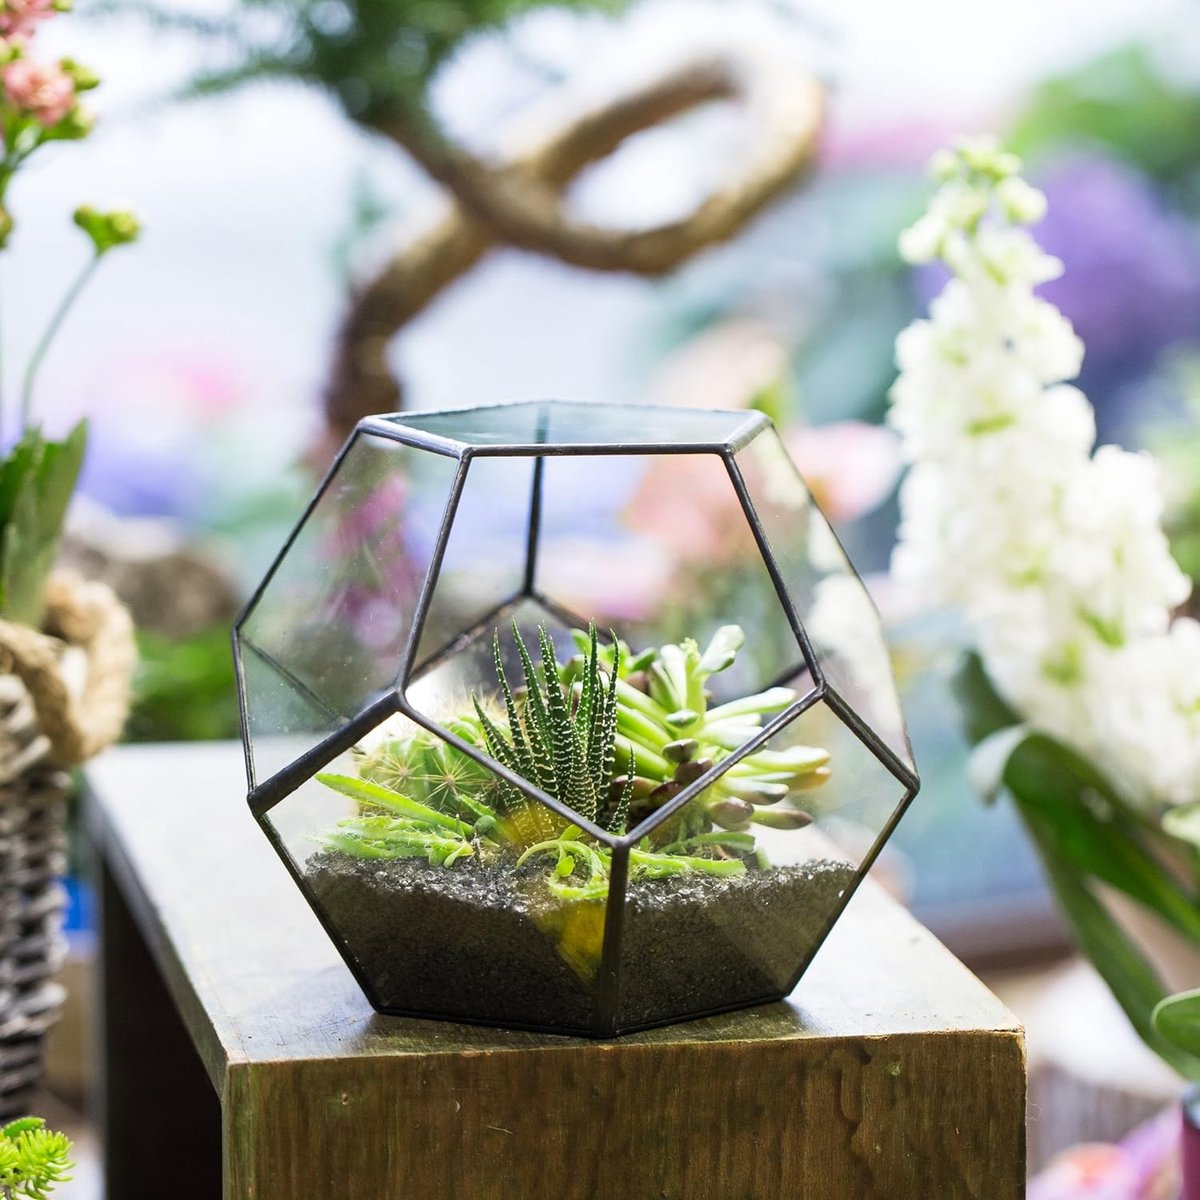 Pot de fleurs fait main en verre dodécaèdre pentagonal transparent,  terrarium